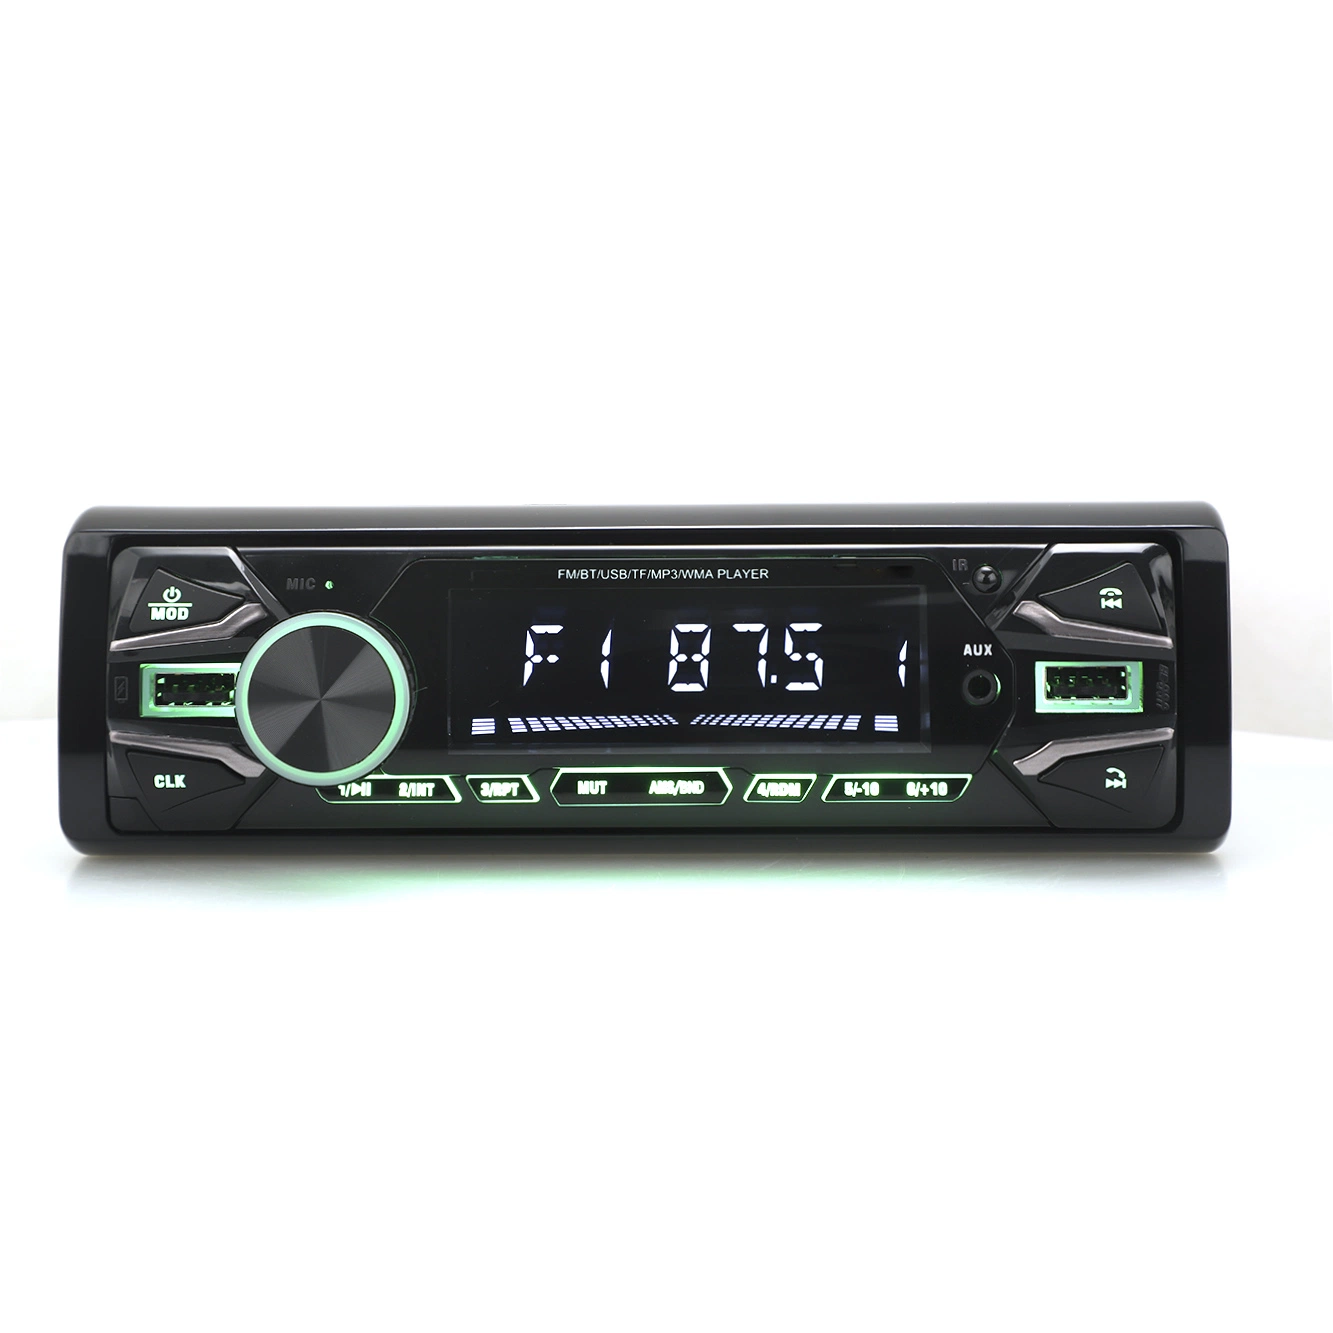 FM-Sender Audio Auto Audio Auto Stereo Auto Audio Auto Zubehör Auto MP3 Player